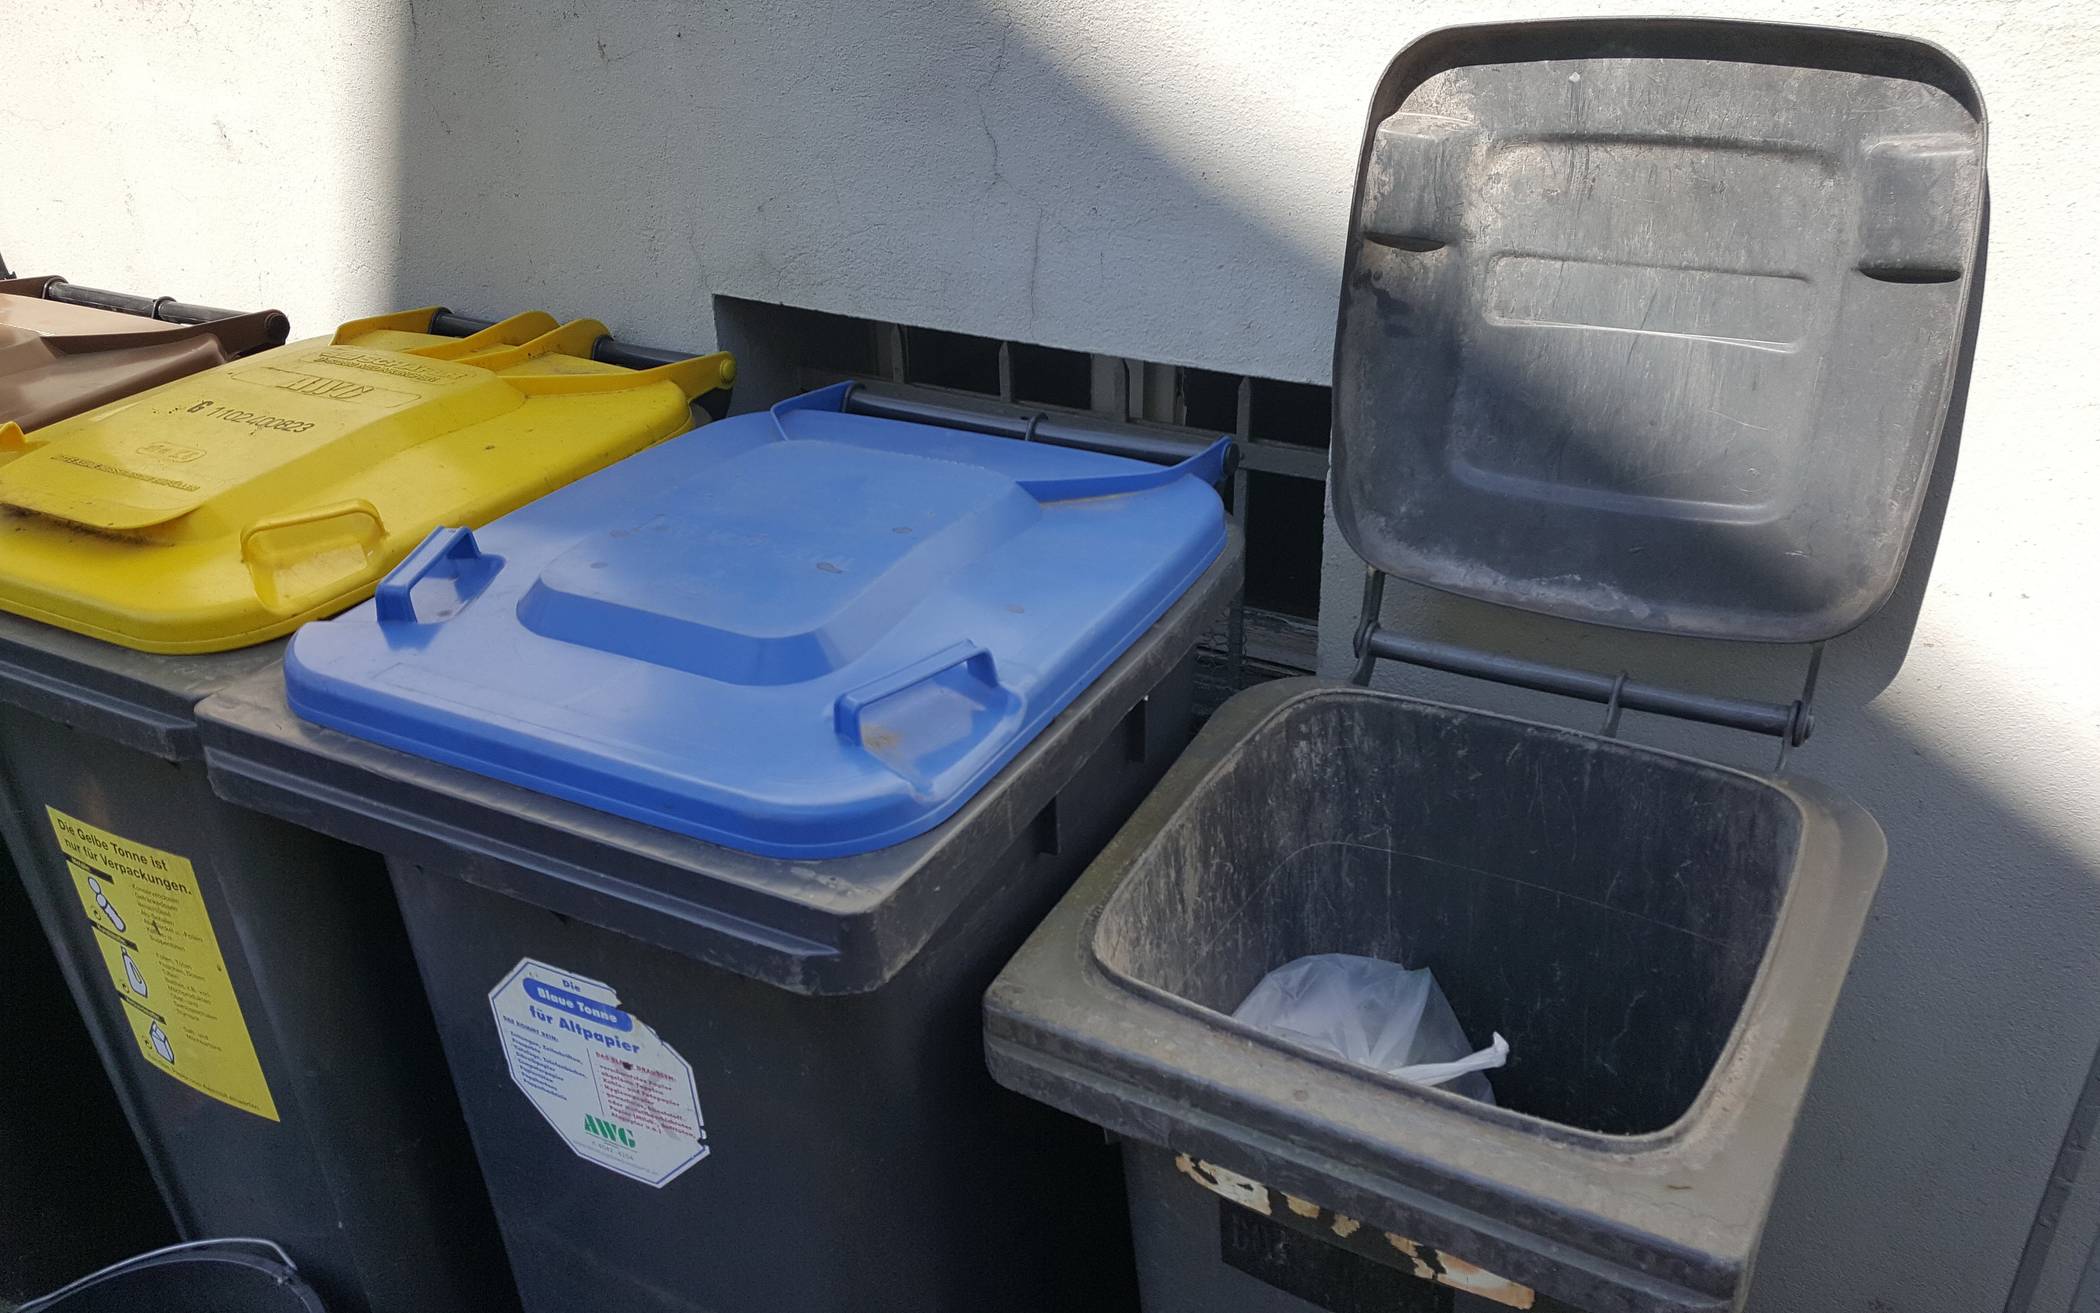  In die graue Mülltonne gehört nur "normaler" Restabfall. Bauschutt beispielsweise hat hier drin gar nichts zu suchen. 